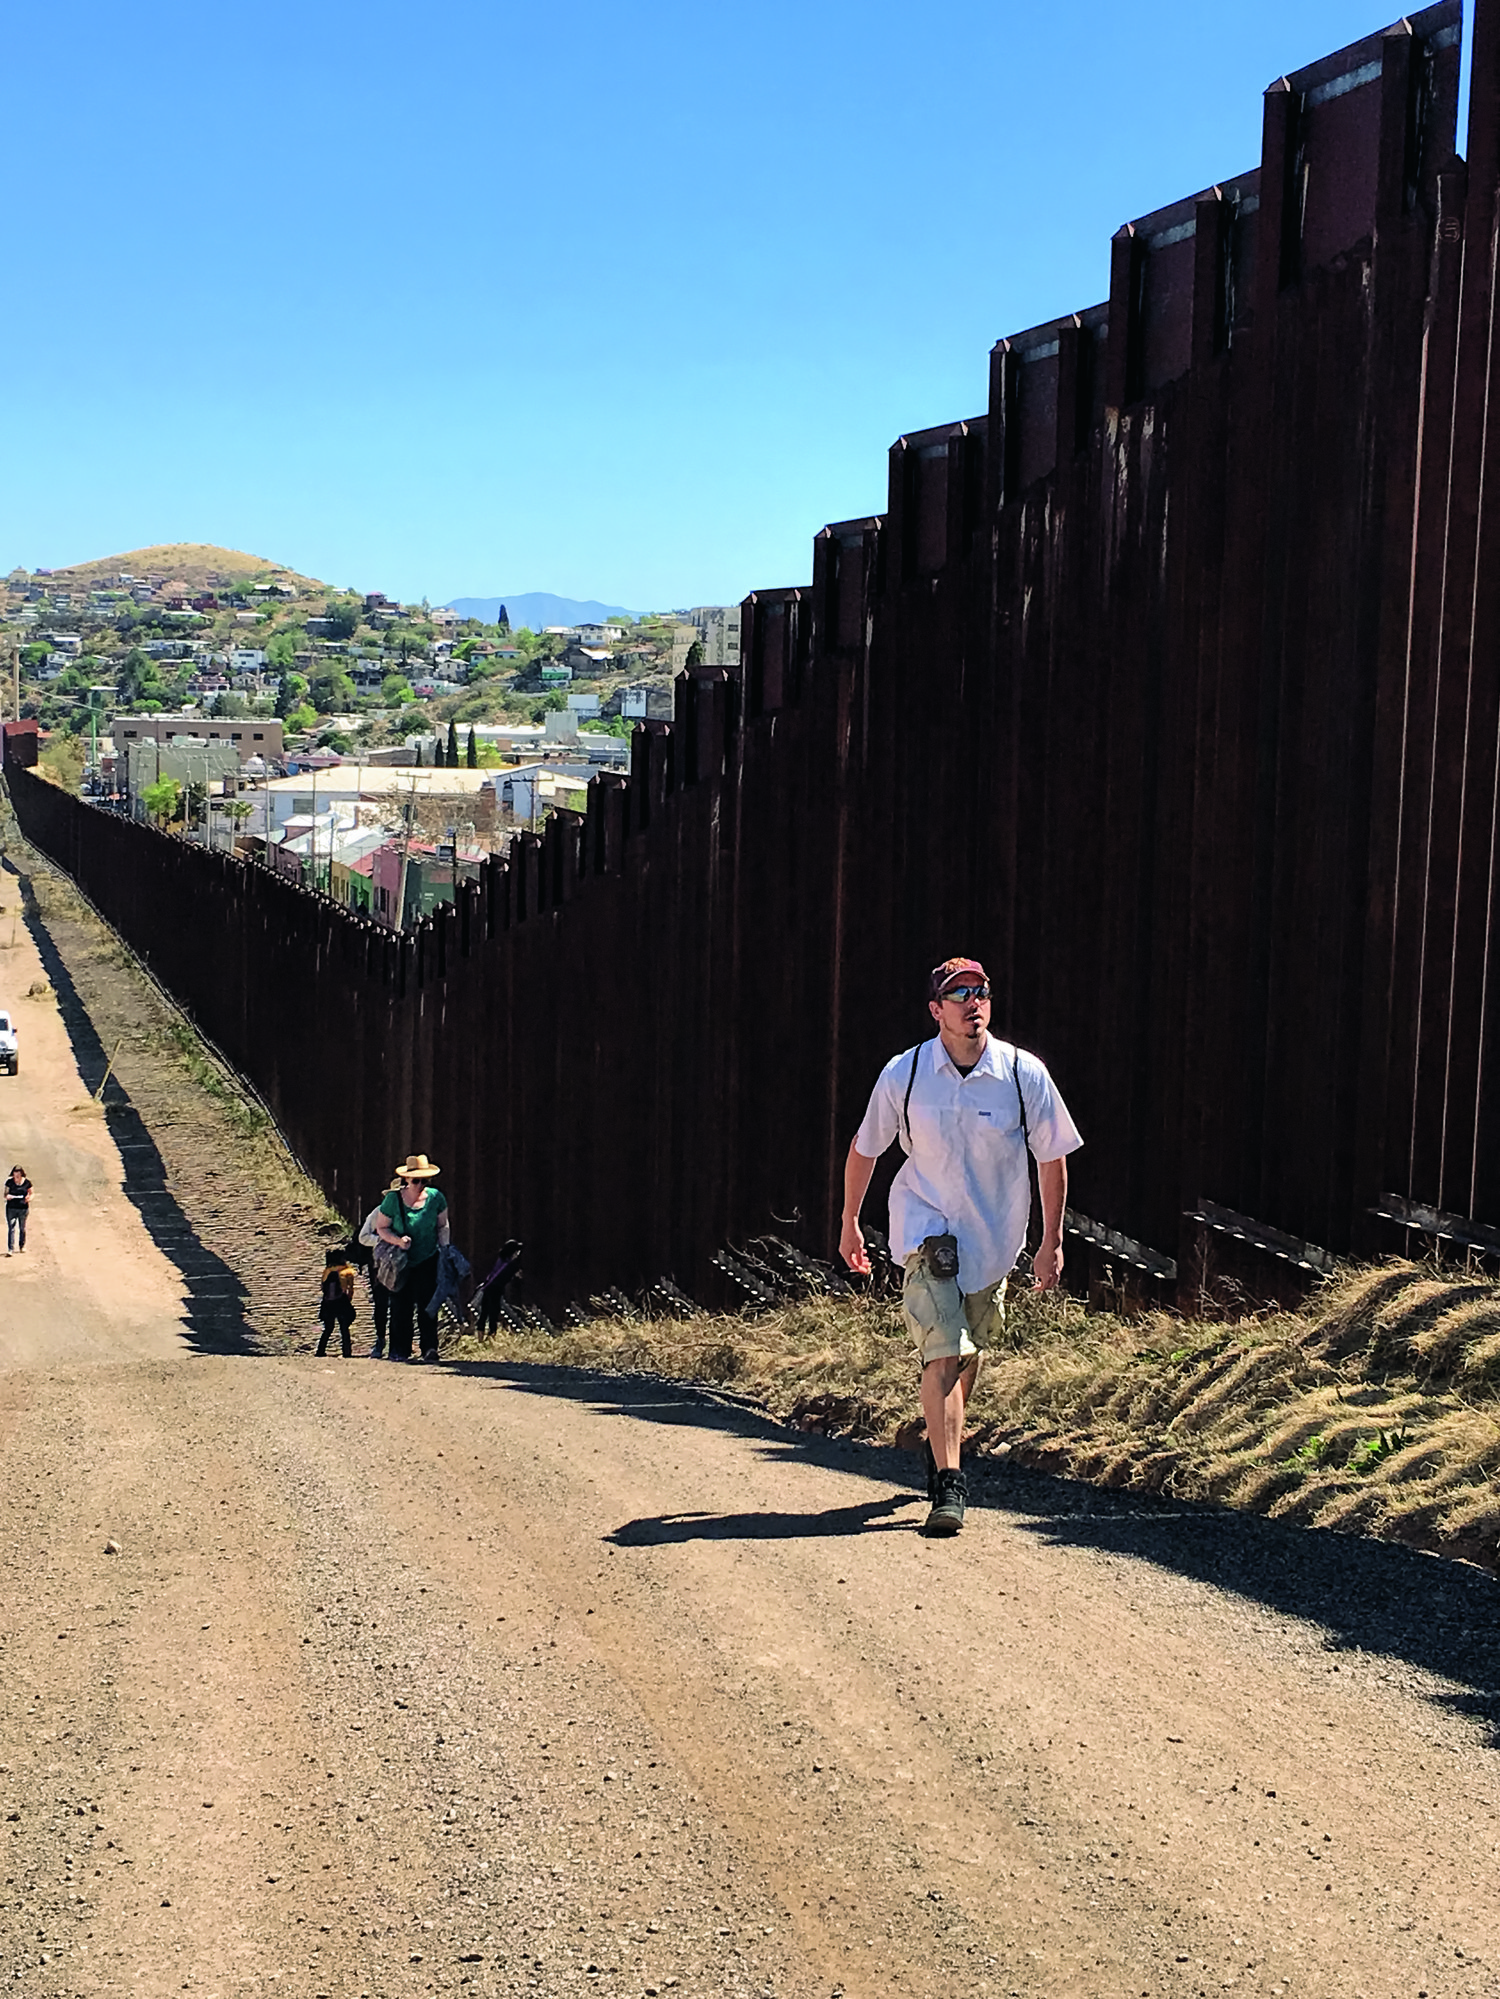 Students walking along the border wall in Nogales, Arizona